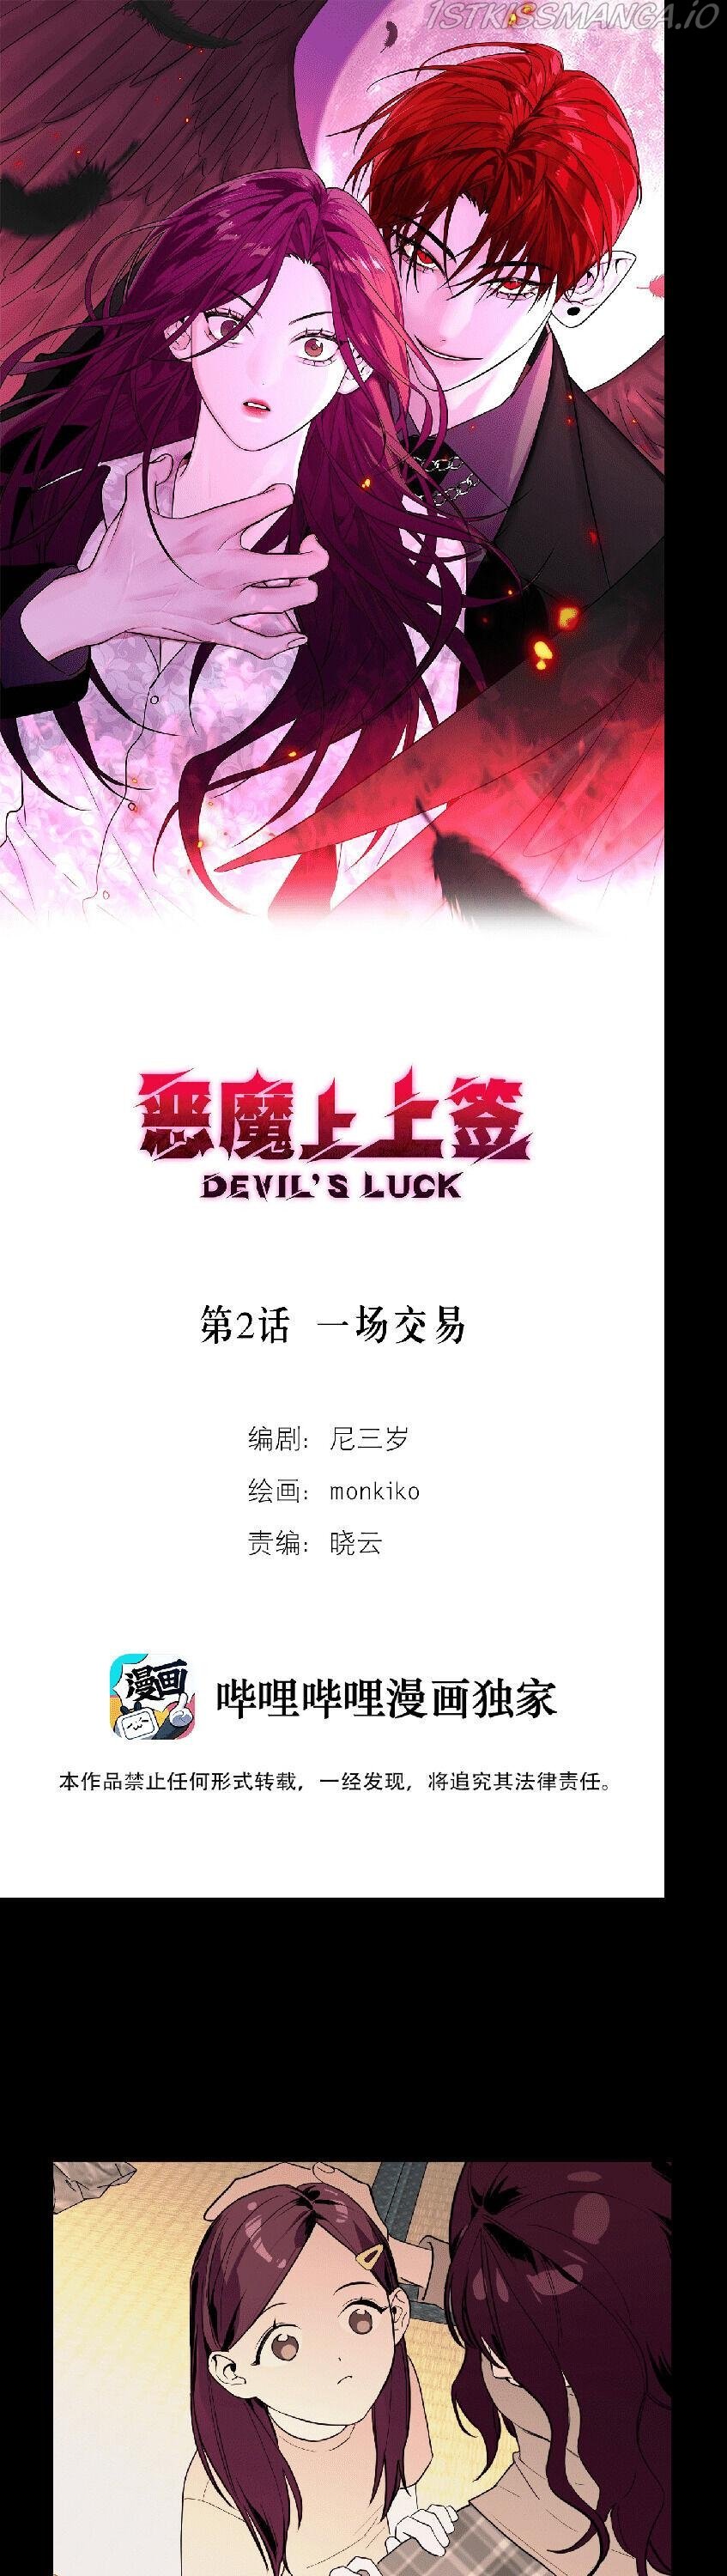 Devil’s Luck chapter 2